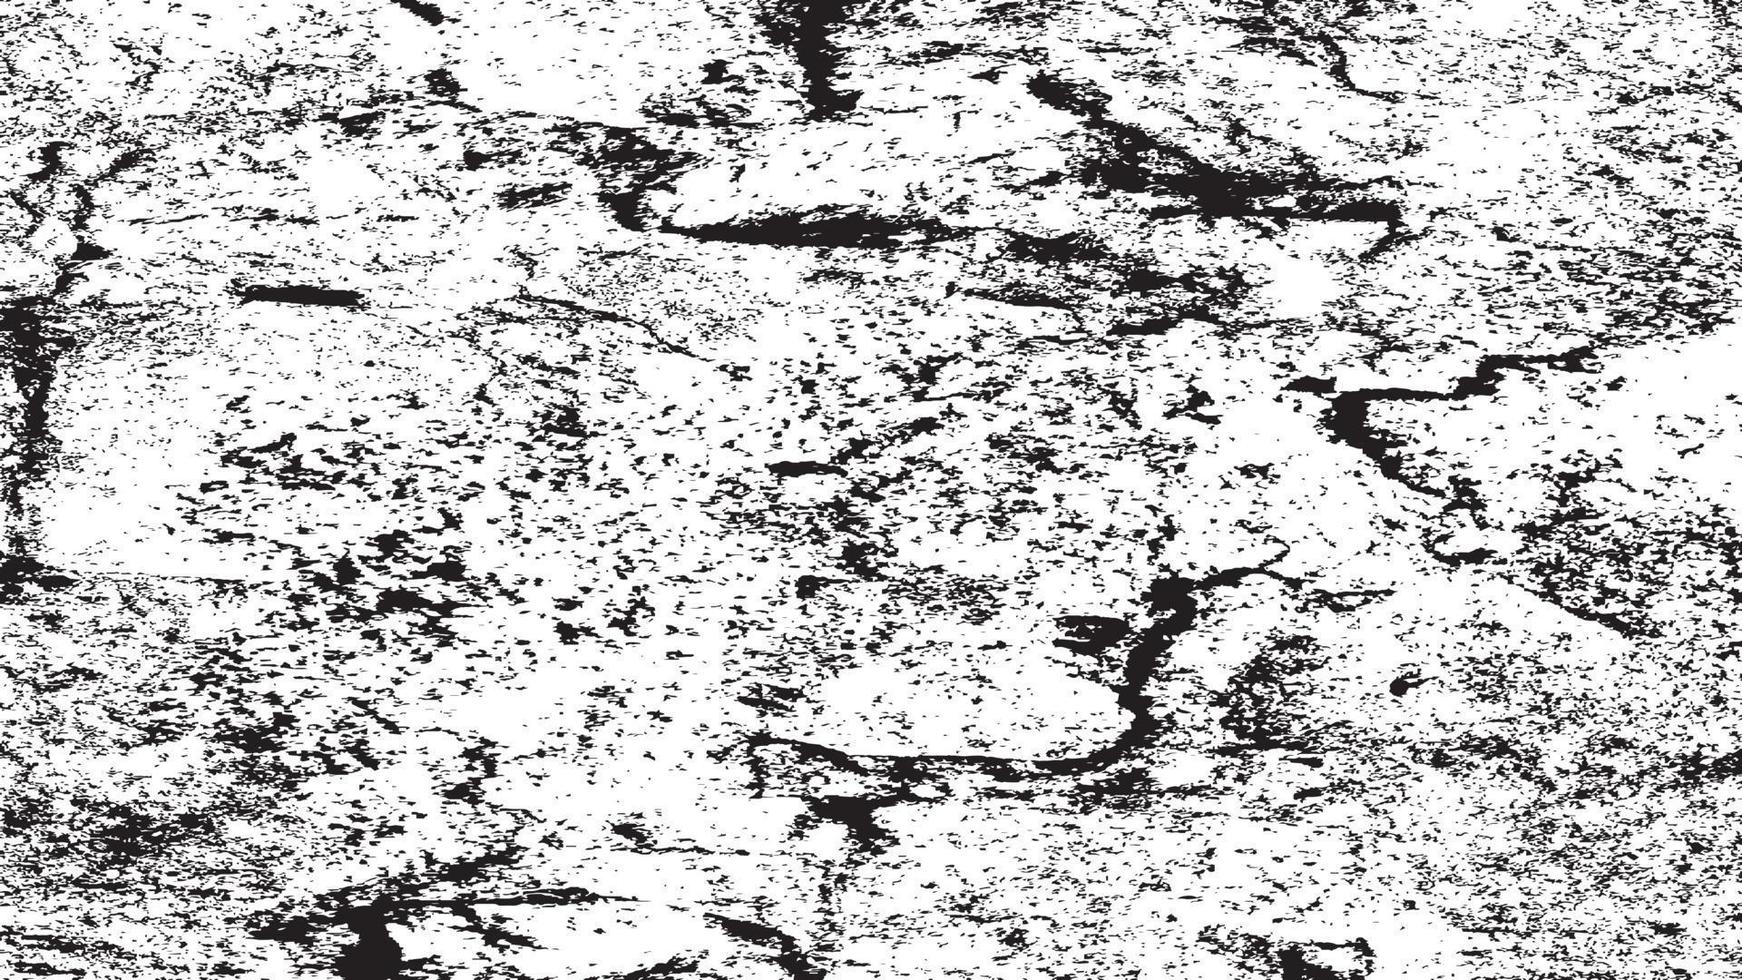 beunruhigte Overlay-Textur, Grunge-Hintergrund schwarz-weiß abstrakt, Vektor-beunruhigter Schmutz, Textur von Spänen, Rissen, Kratzern, Schrammen, Staub, Schmutz. vektor